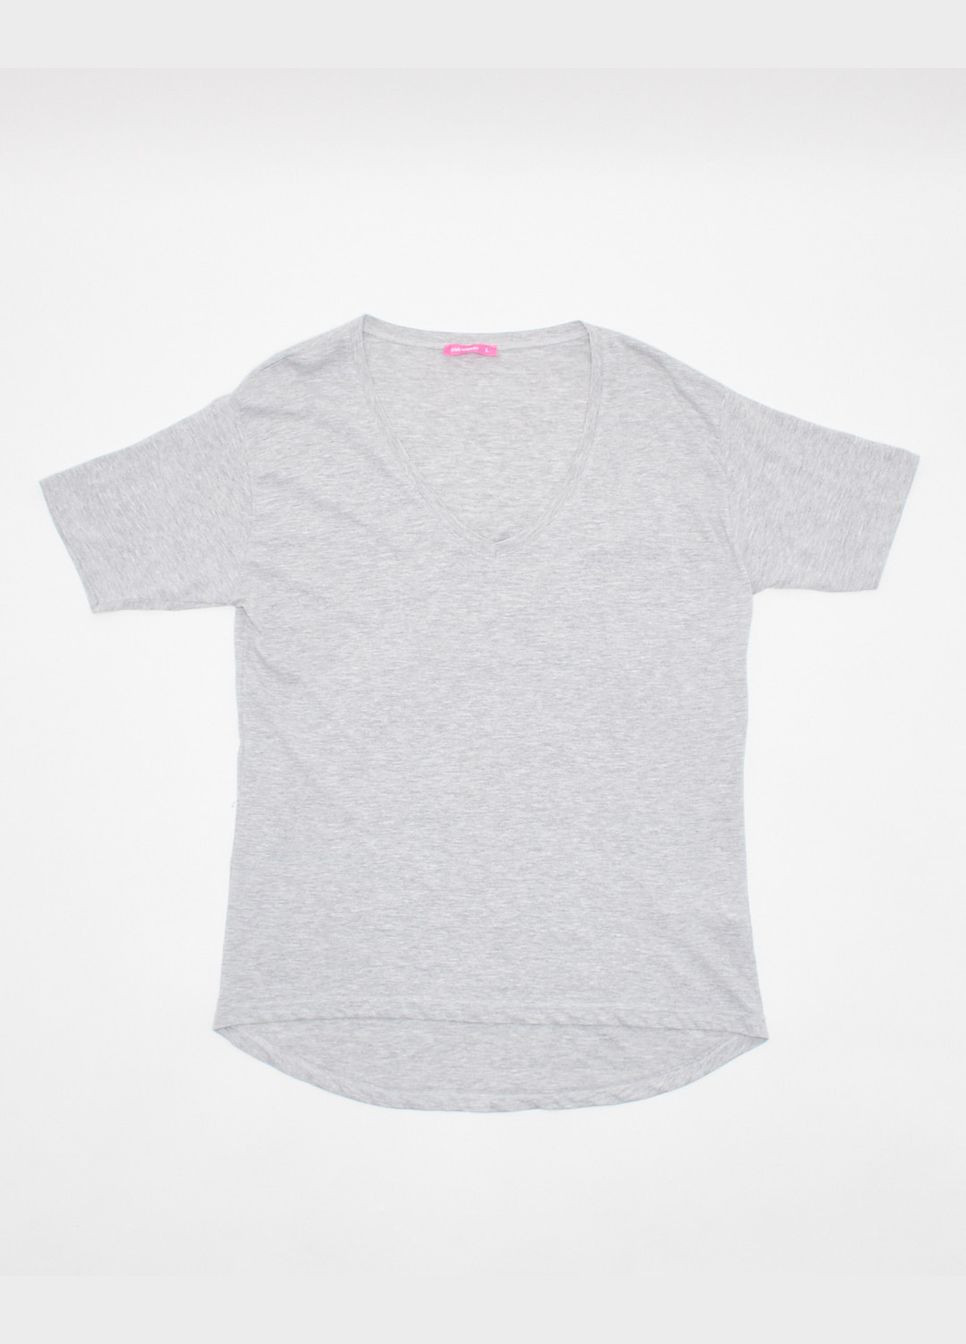 Сіра футболка basic,сірий меланж, Pink Woman